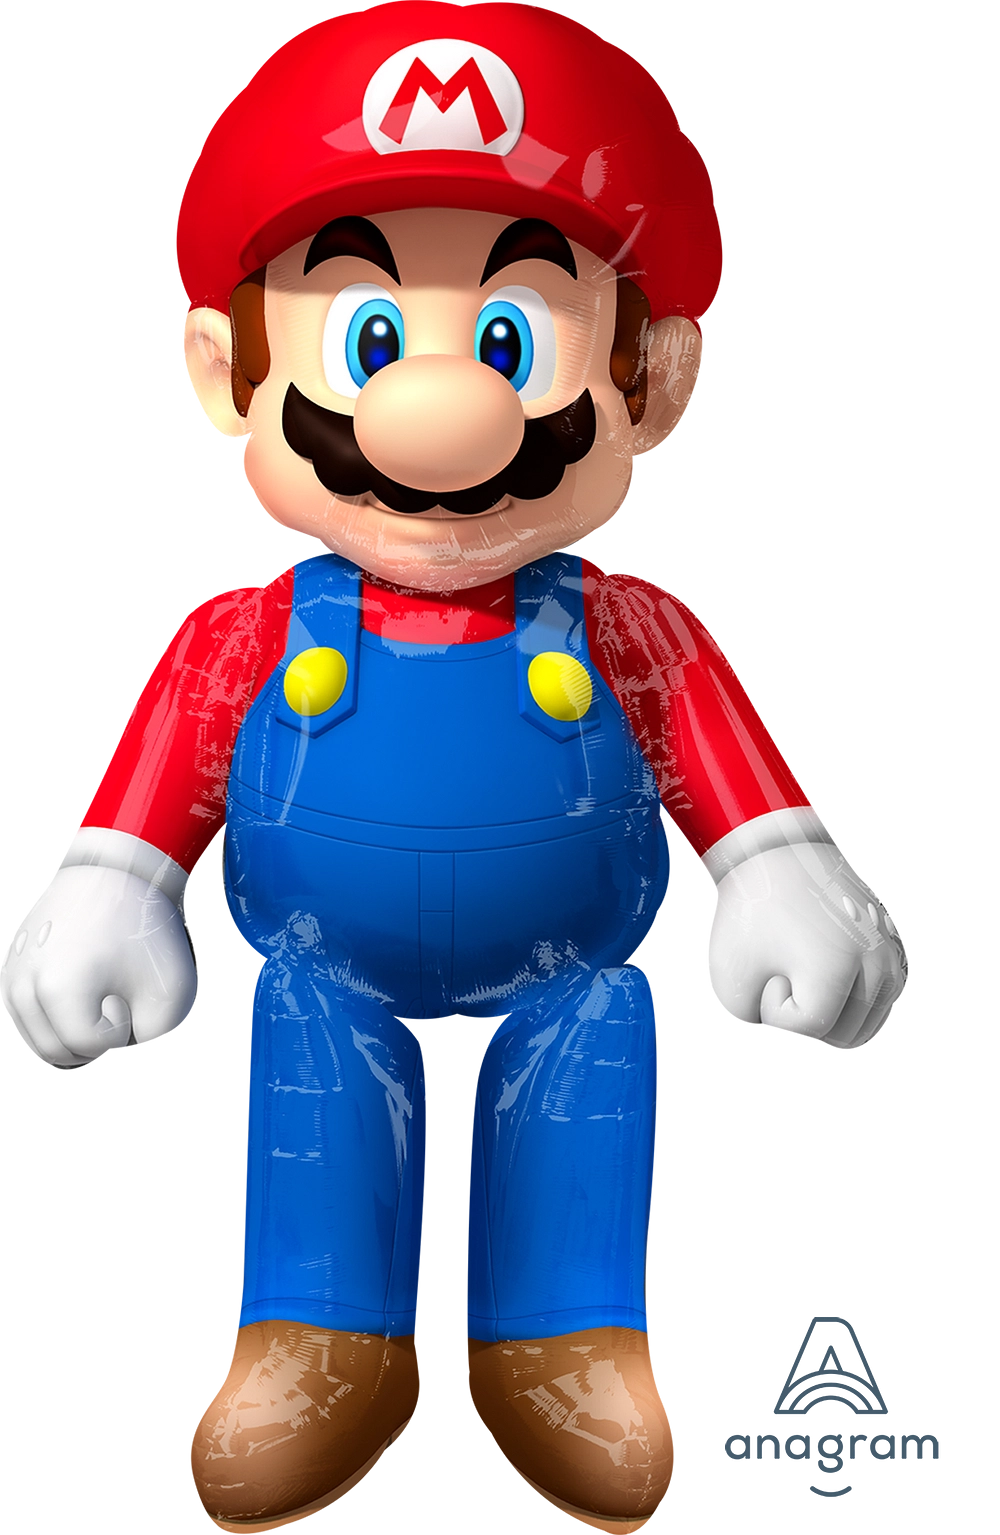 Mario Bros. Foil Balloon, 60"